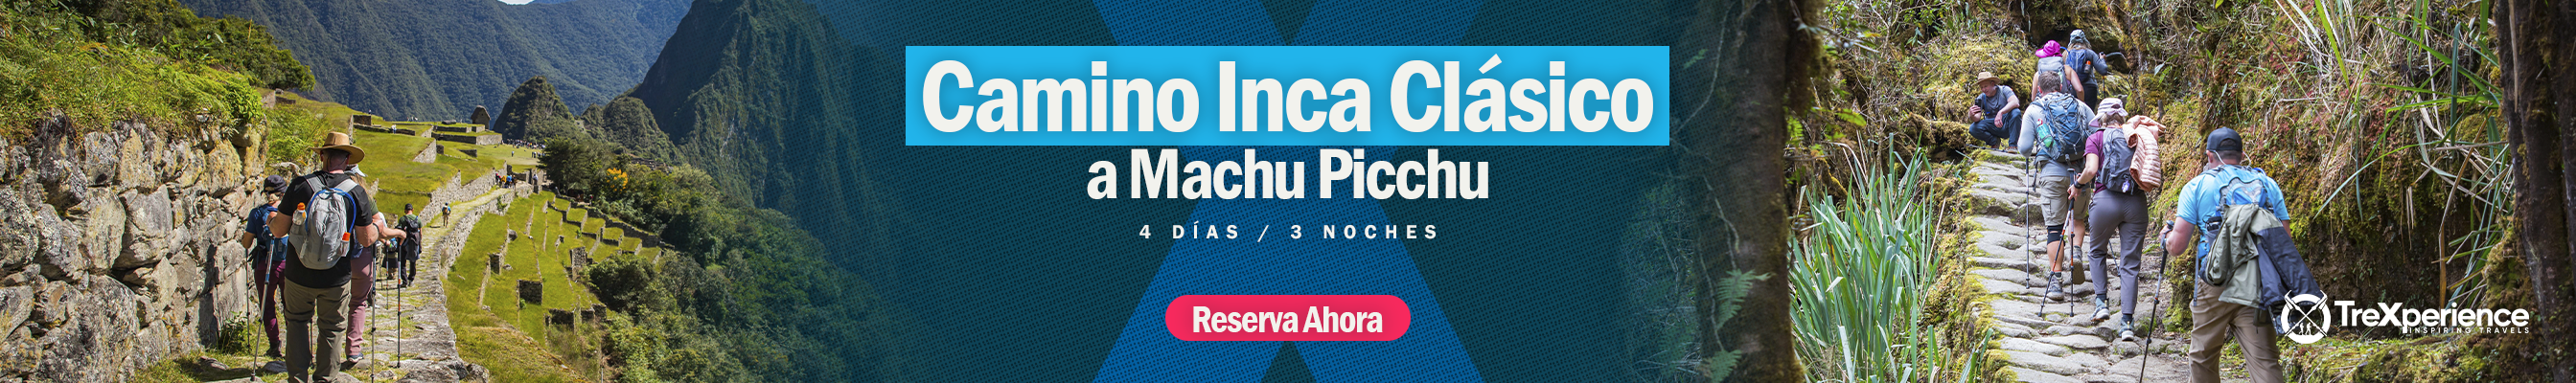 Camino Inca a Machu Picchu | TreXperience